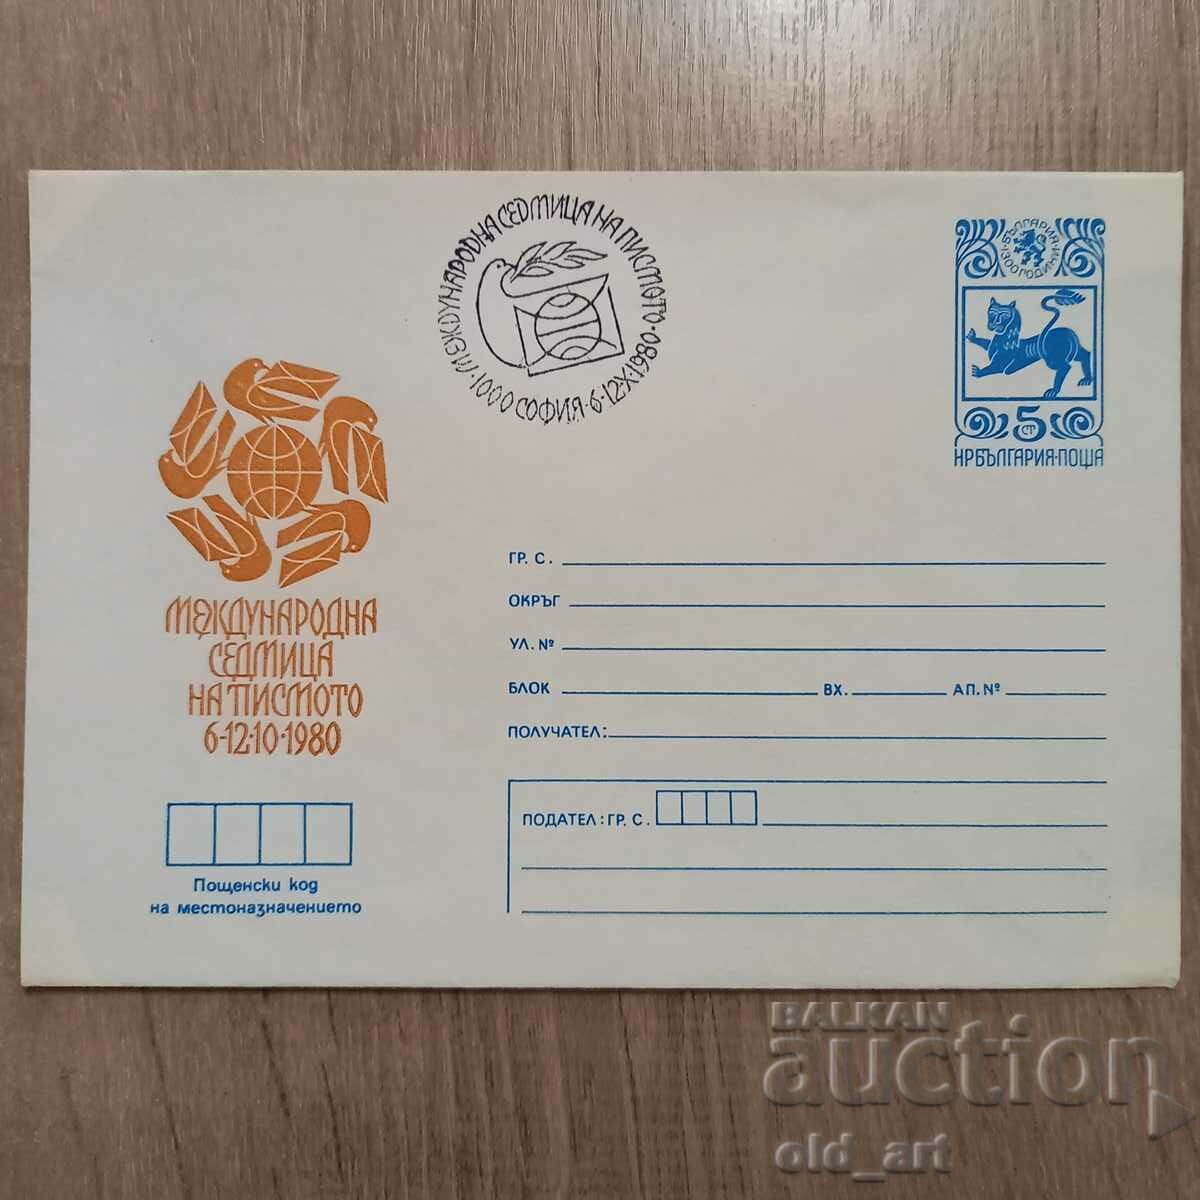 Ταχυδρομικός φάκελος - Διεθνής Εβδομάδα Επιστολών